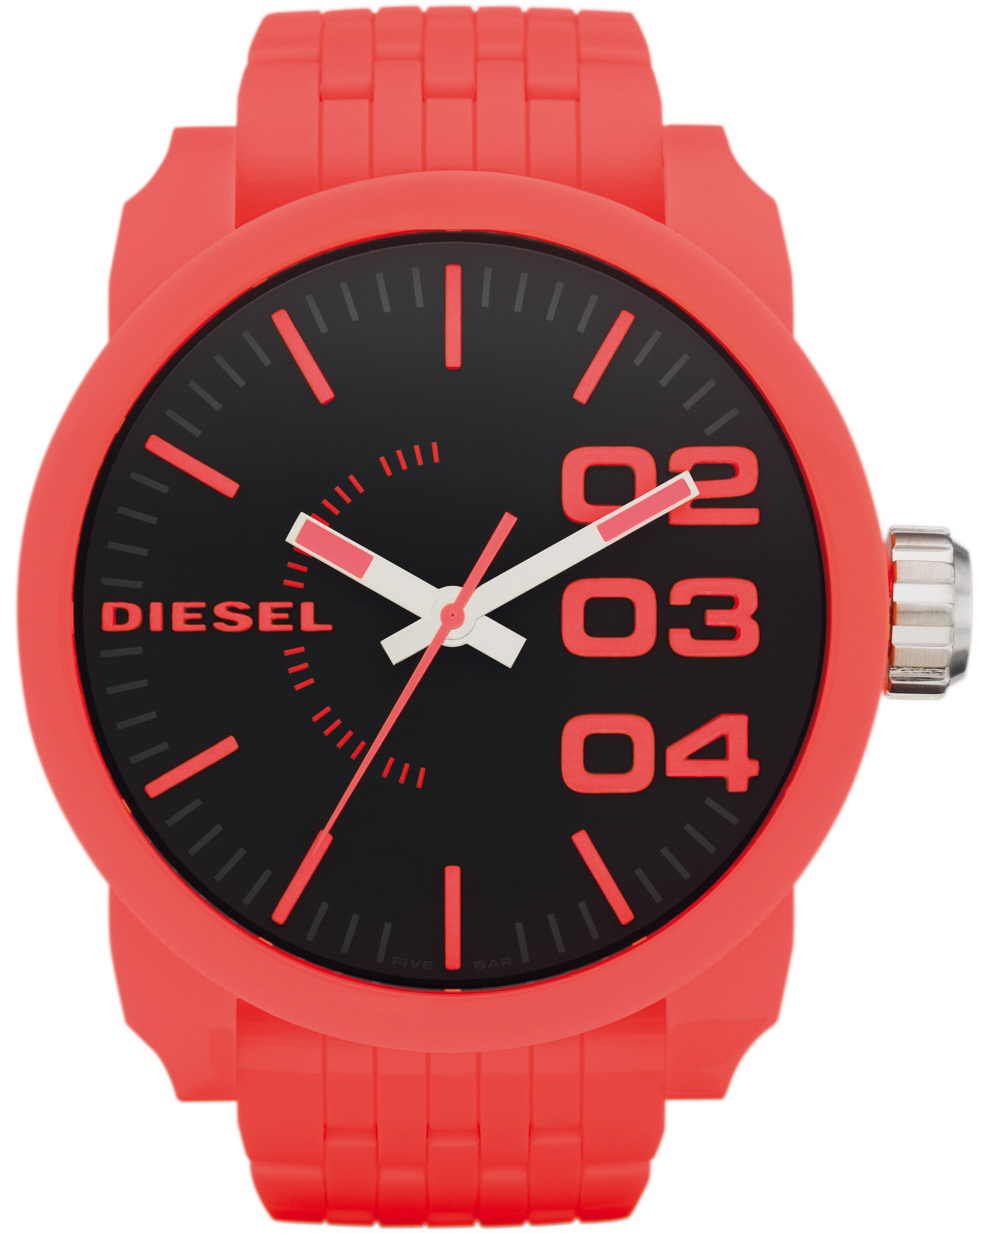 Diesel Cliffhanger Analog Red Dial Men's Watch-DZ2168 : Amazon.in: Fashion